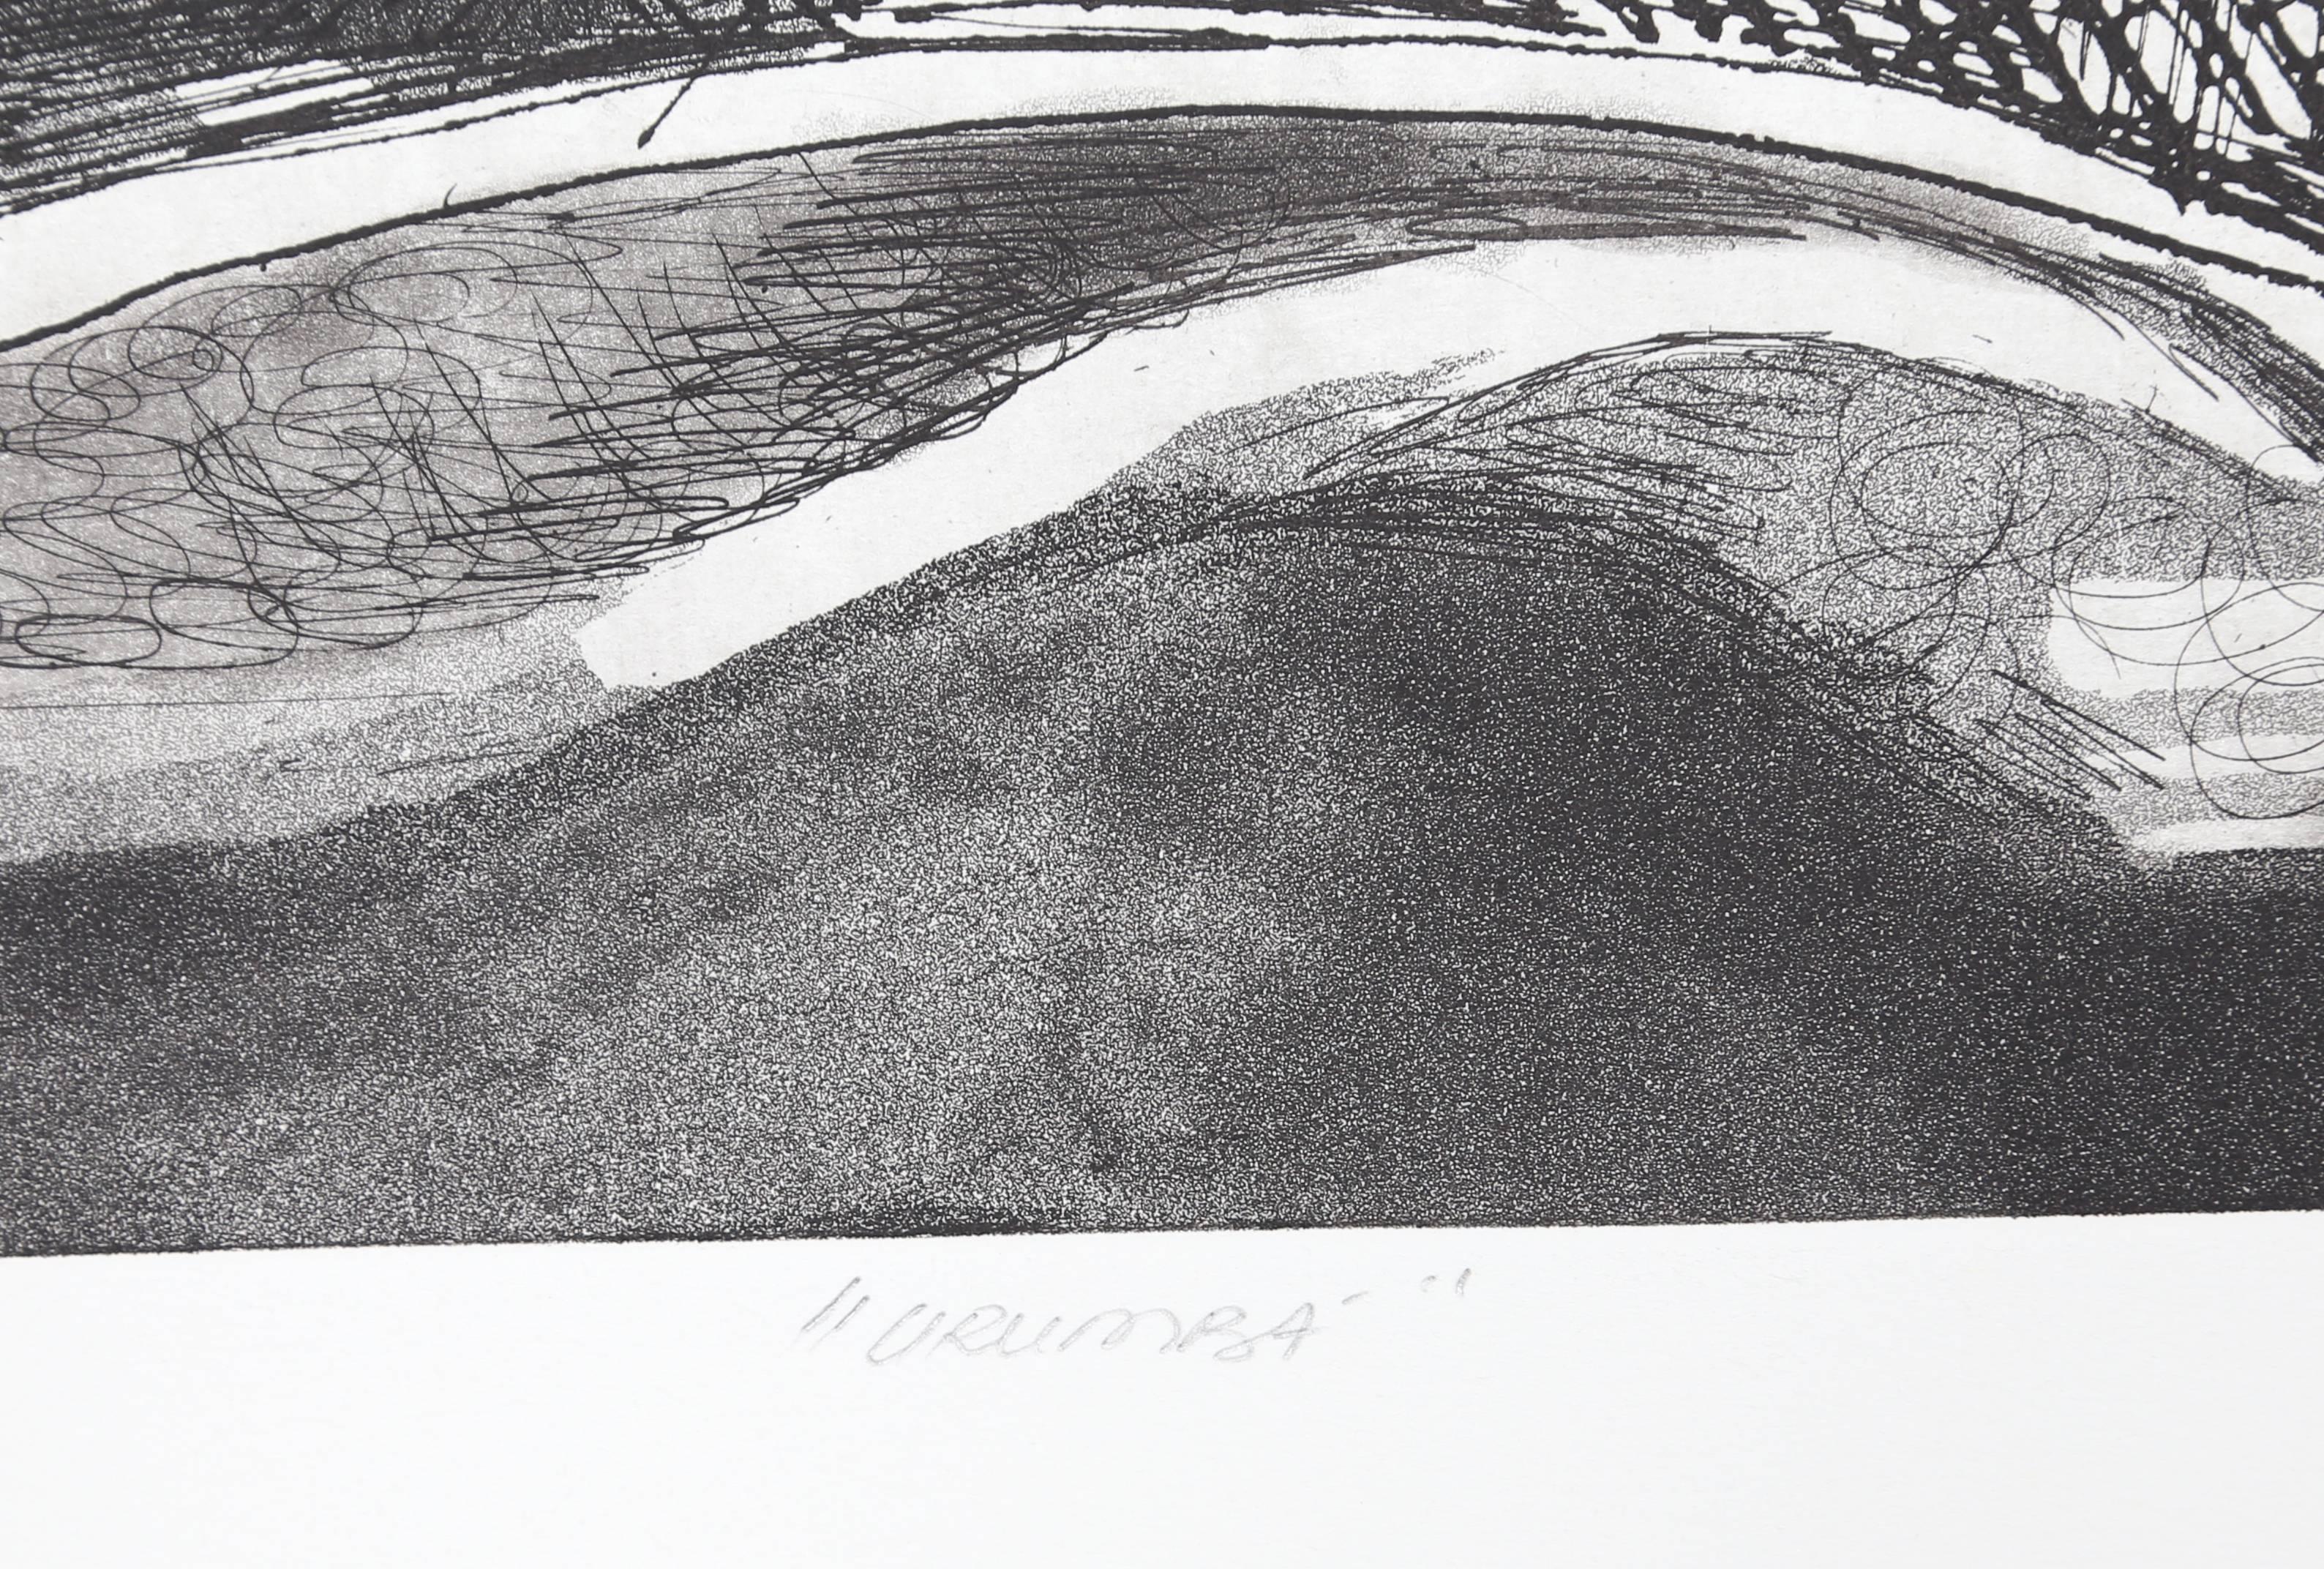 Urumba - Print by Roberto Burle Marx